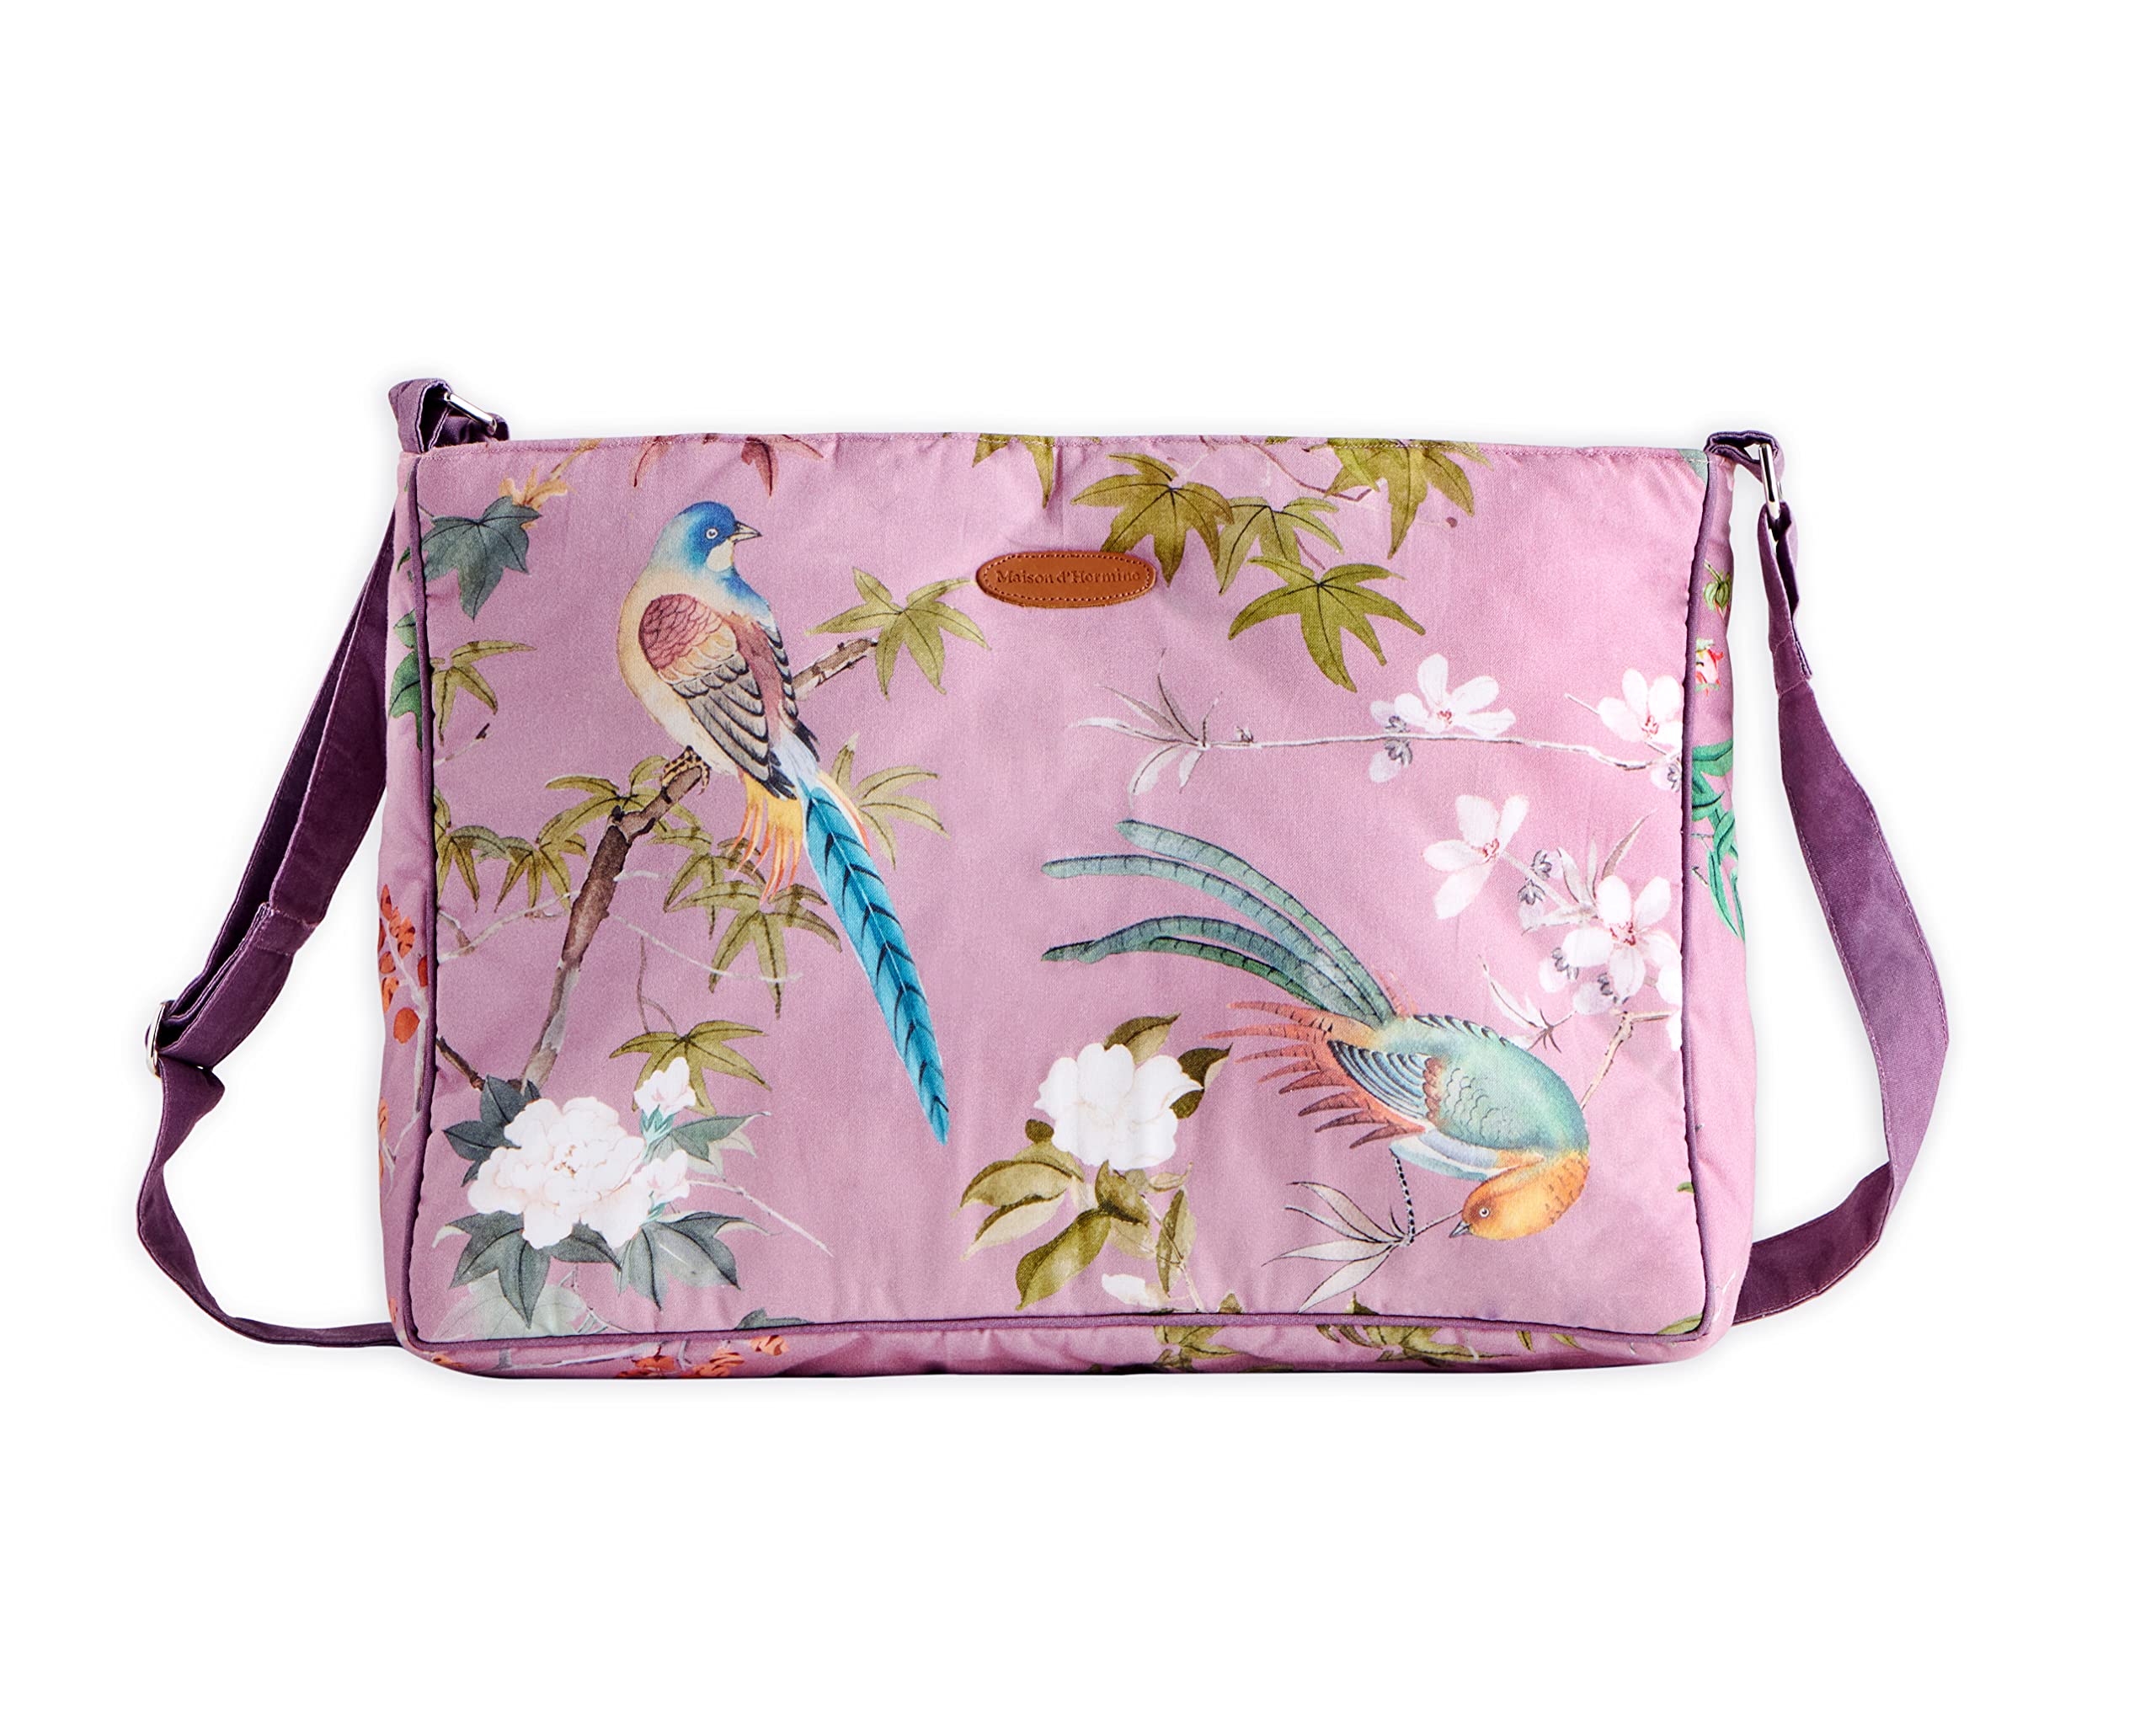 Maison d' Hermine 100% Baumwolle Handtasche Crossbody Bag Schultertasche für Strand Einkaufen Reisen Wandern Frauen, Hokuzai – Violett